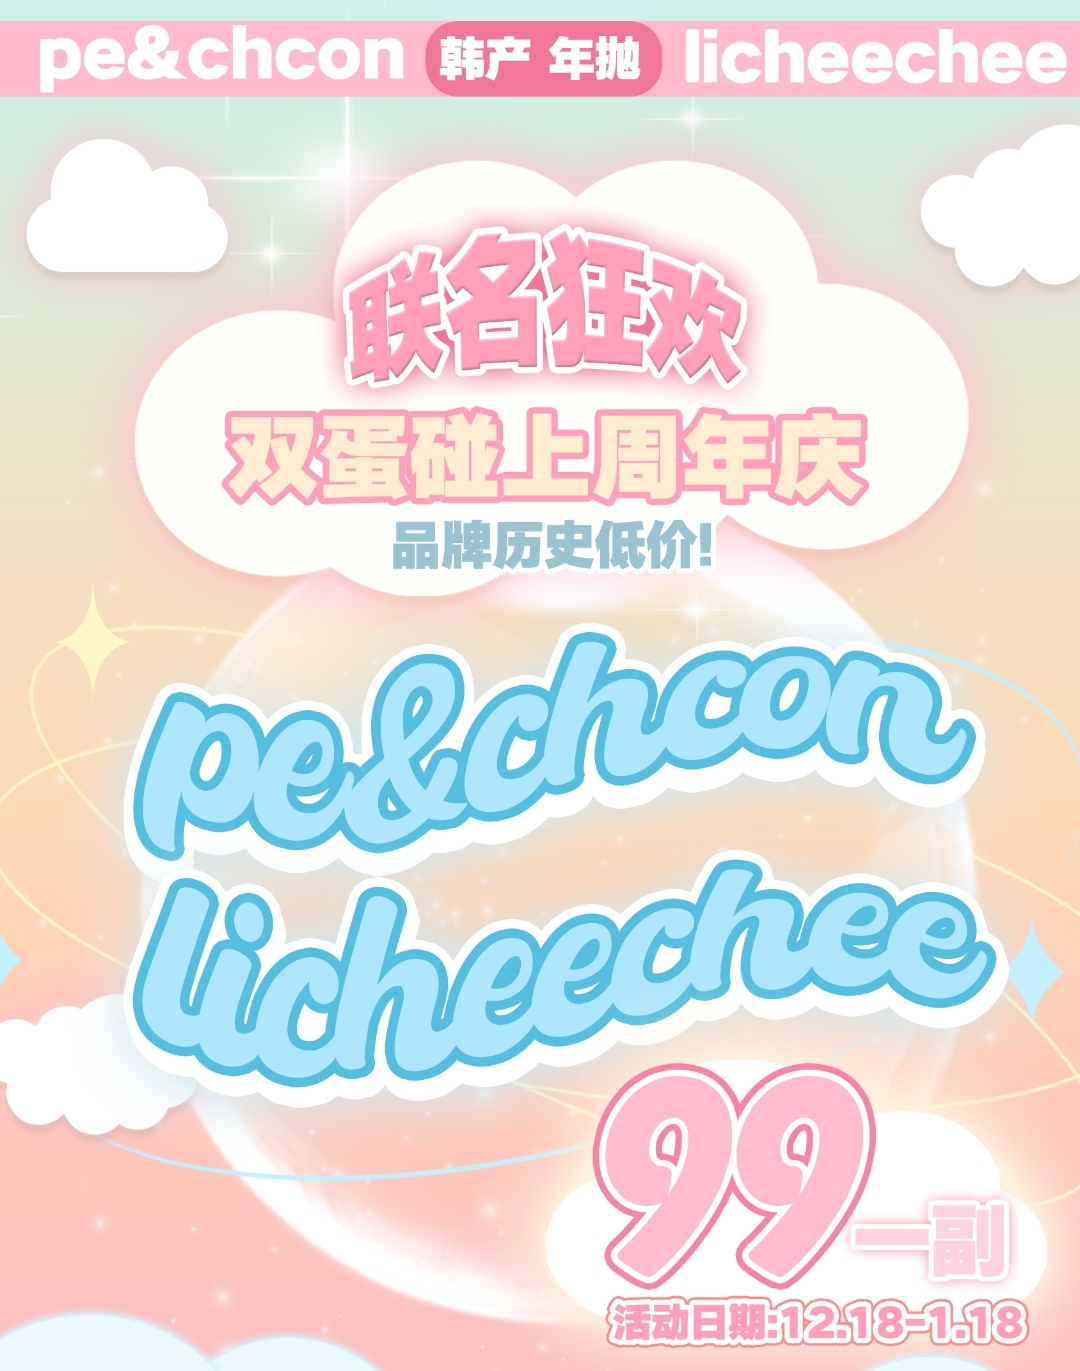 【年抛】Peachcon·Licheechee 双“蛋”碰上周年庆 联名狂欢 福利来袭